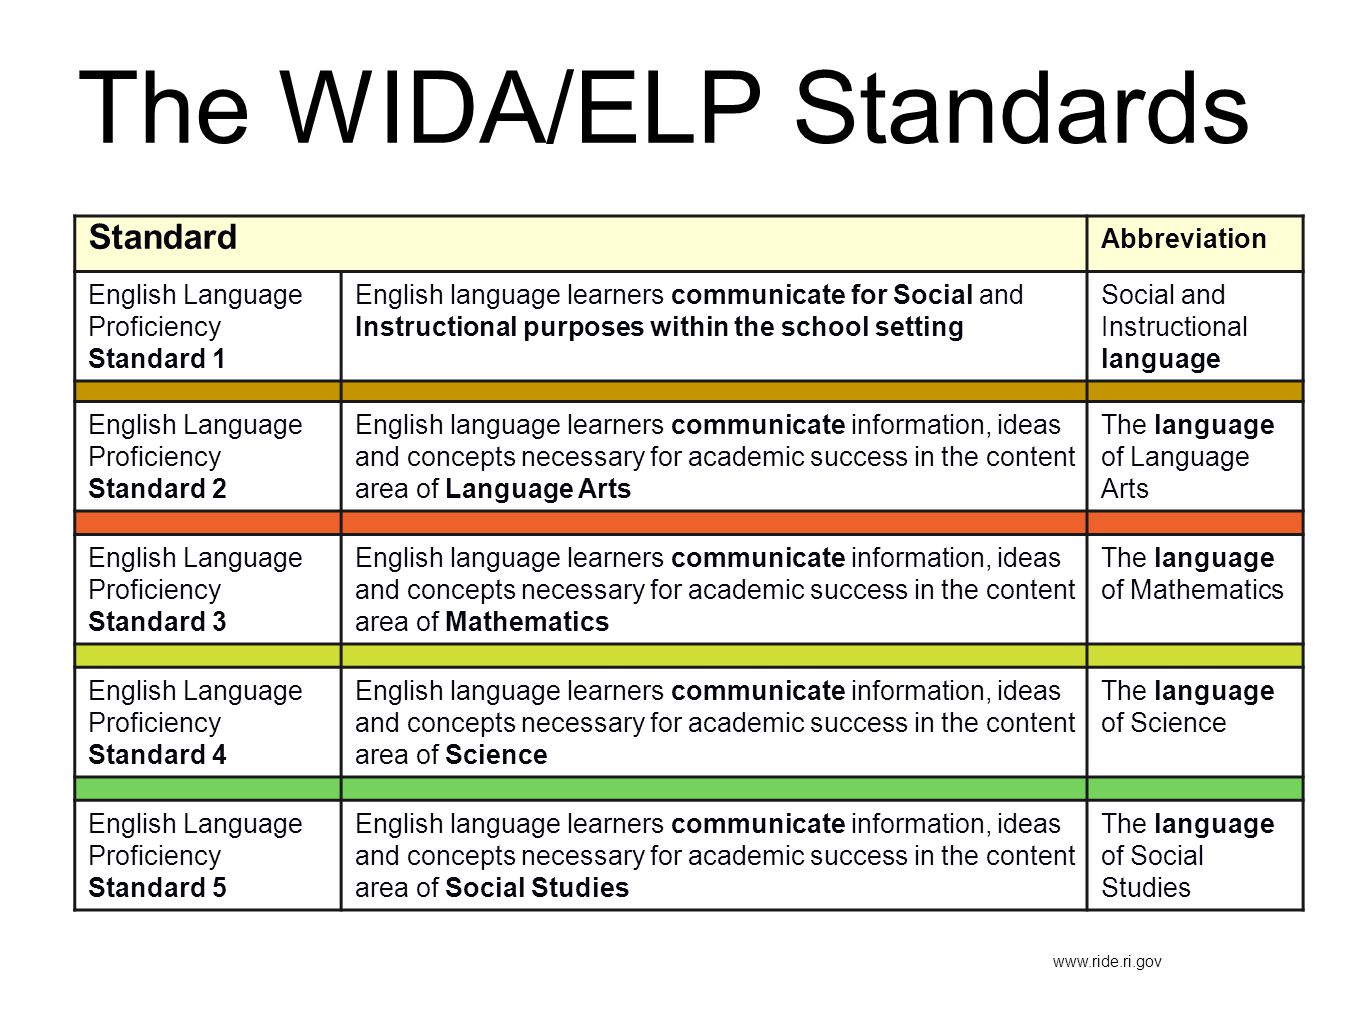 The WIDA/ELP Standards